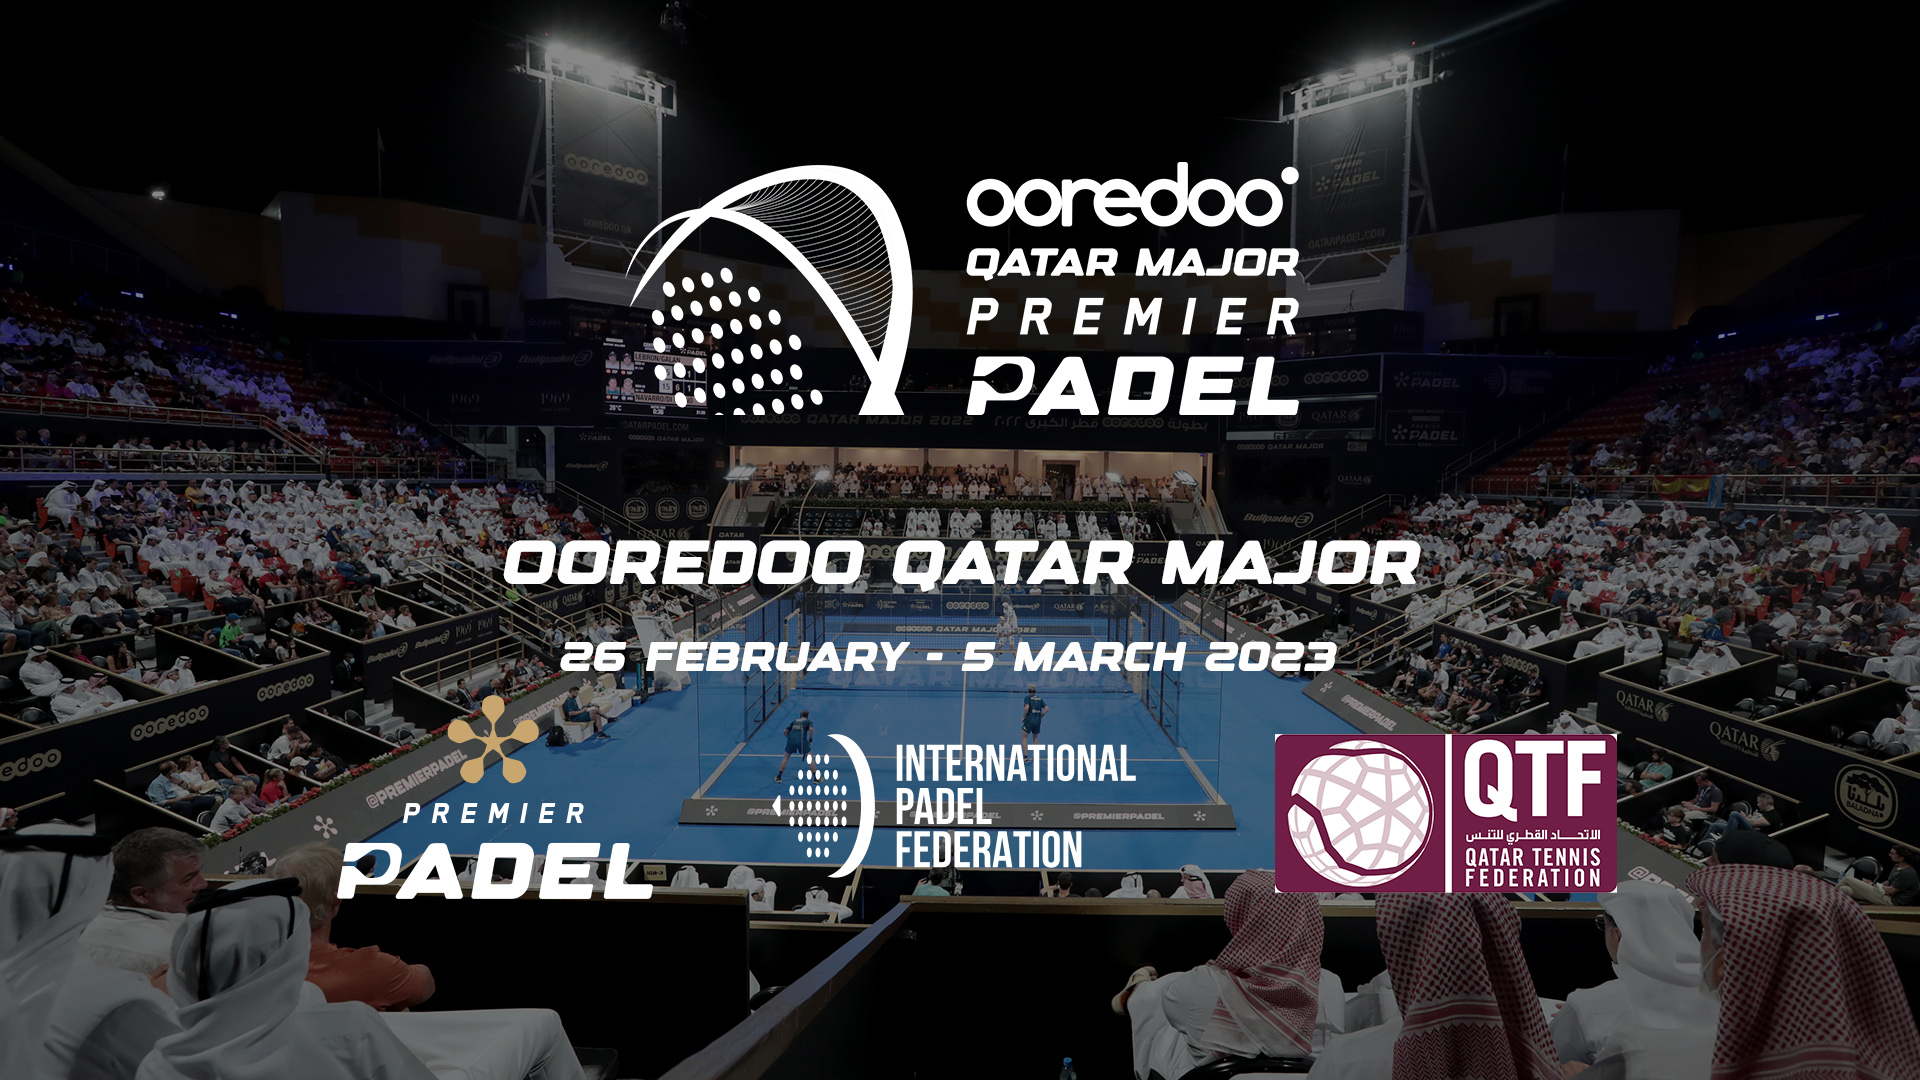 Premier Padel – Ooredoo Qatar Major 2023 i Doha fra 26. februar til 5. marts!